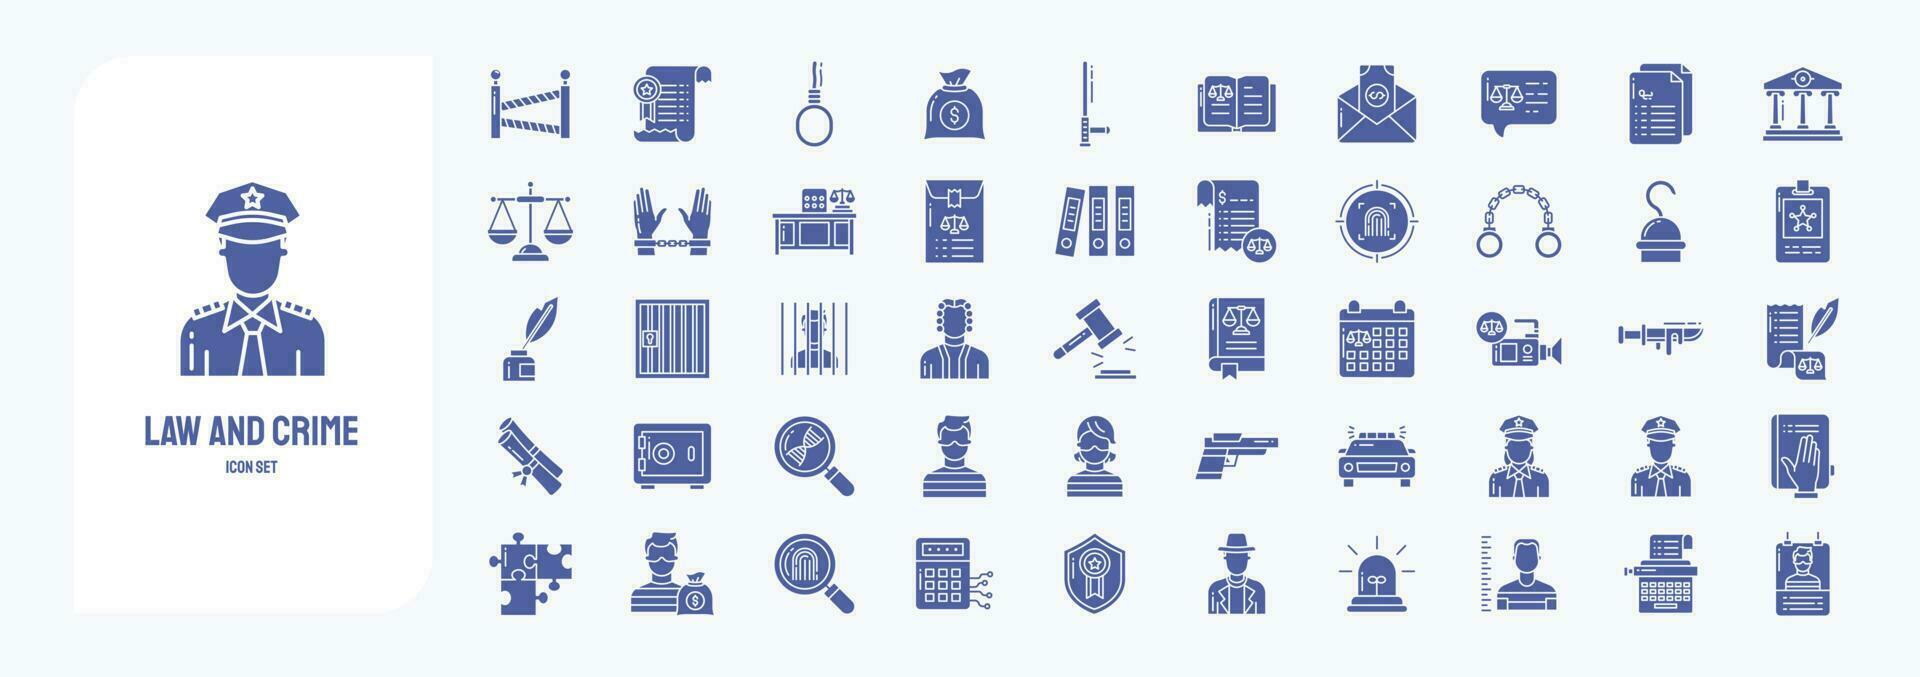 Gesetz und Verbrechen, einschließlich Symbole mögen Polizei, Gewahrsam, Gericht, Handschellen und Mehr vektor